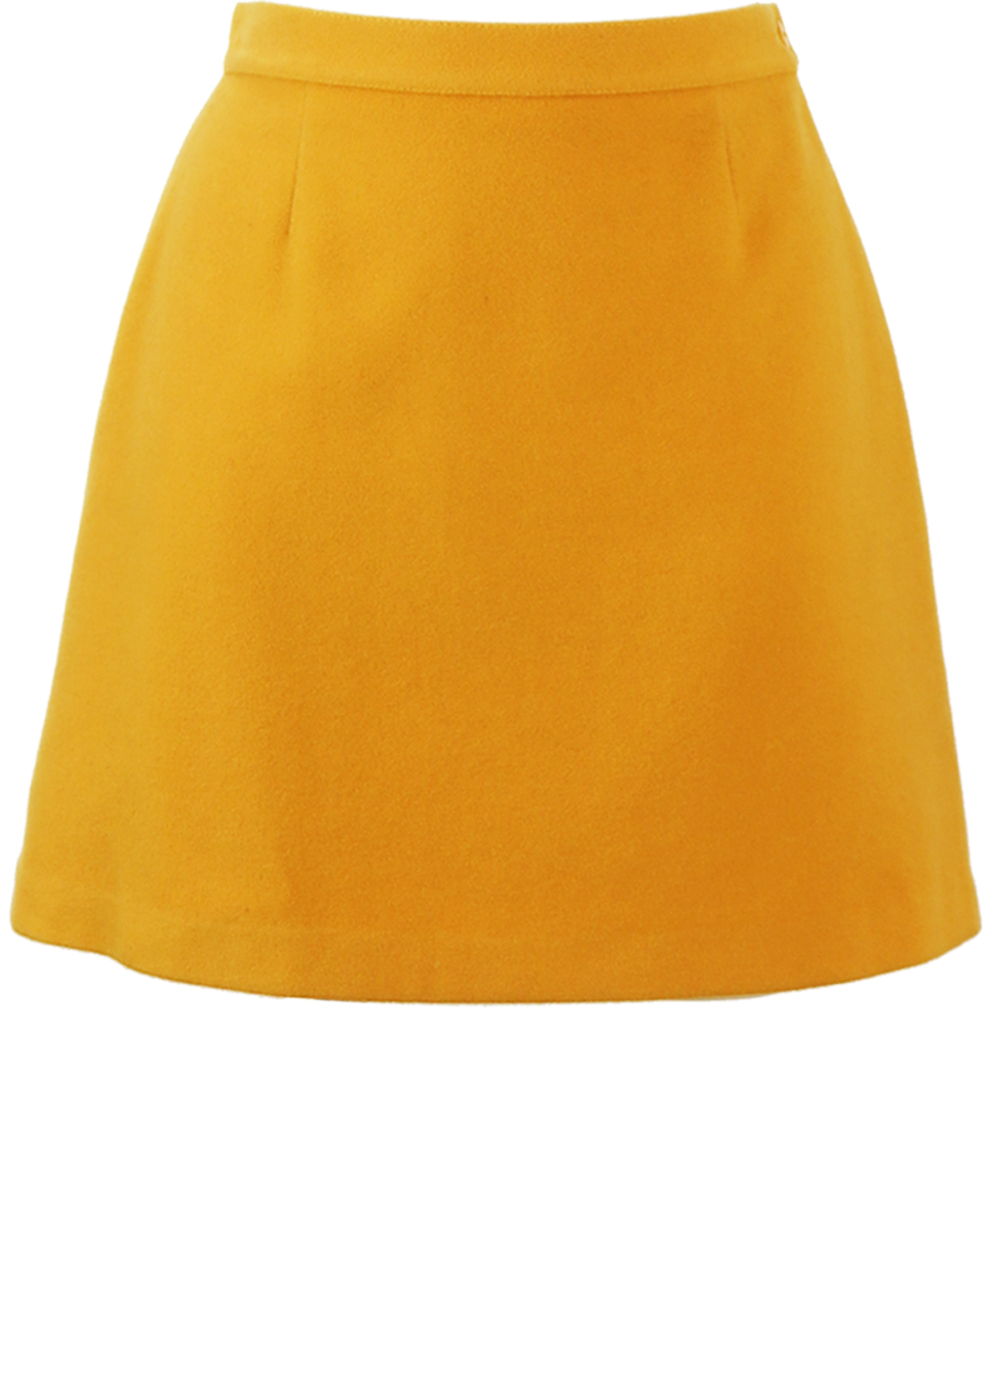 Mustard Yellow Wool Mini Skirt - S | Reign Vintage